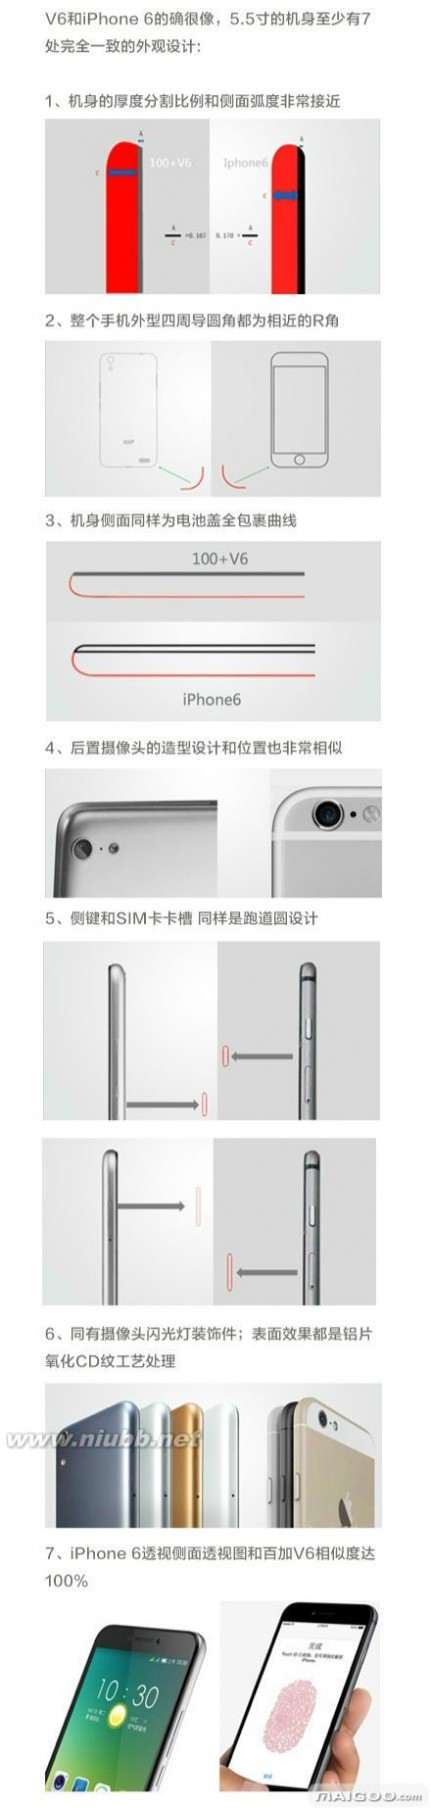 百加v6 苹果公司被告iPhone6外观侵权 来看看百加V6和iPhone6有多像?